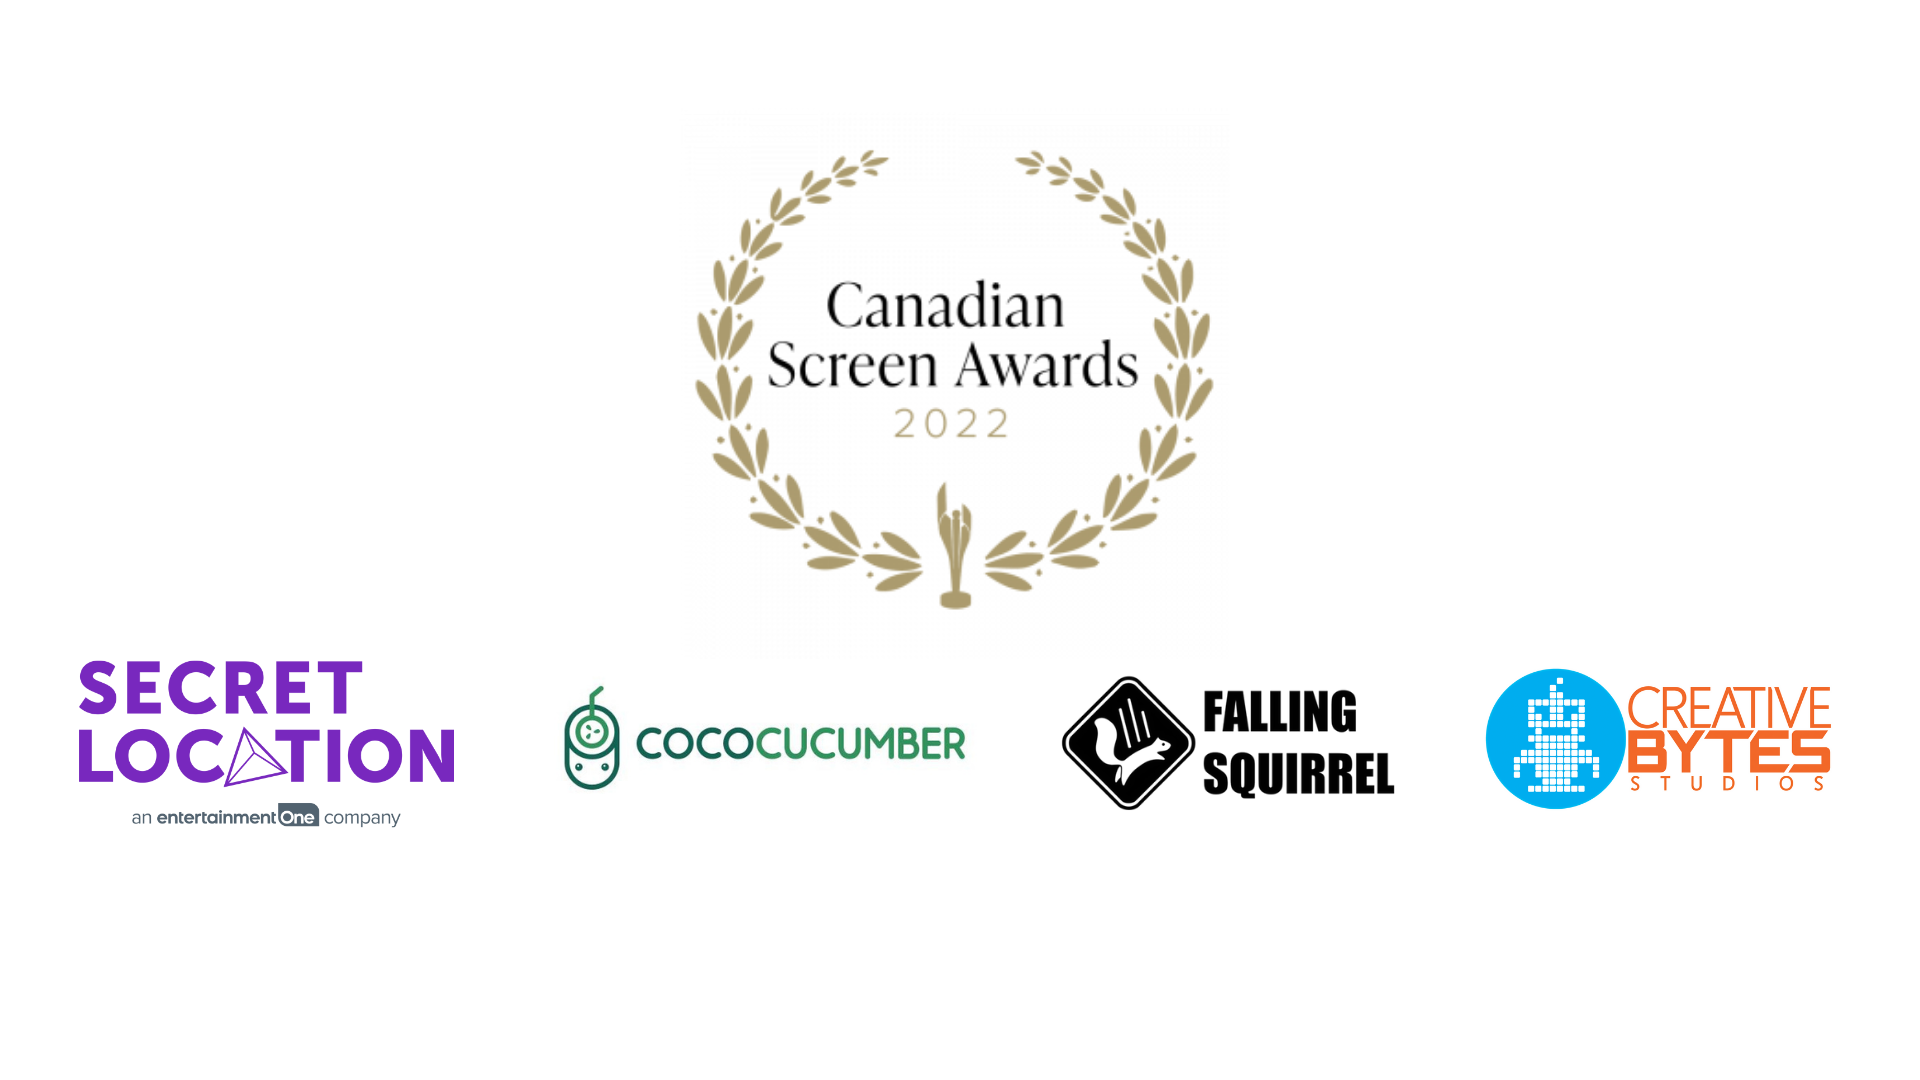 Canadian Screen Awards 2022